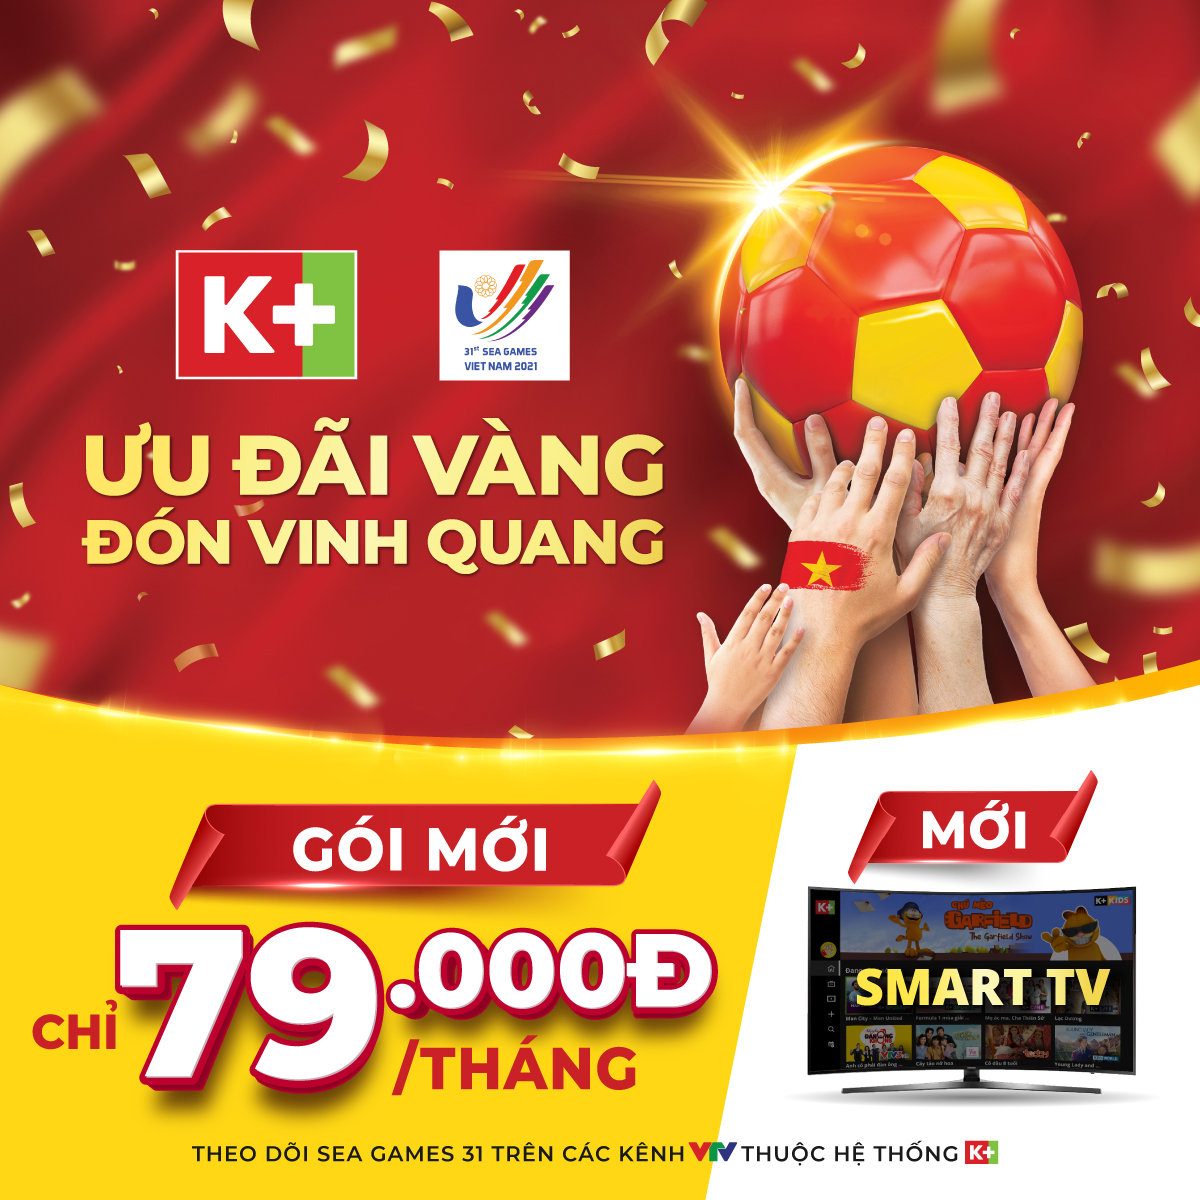 Truyền hình K+ ra mắt gói mới chỉ 79,000 đồng và App K+ trên Smart TV